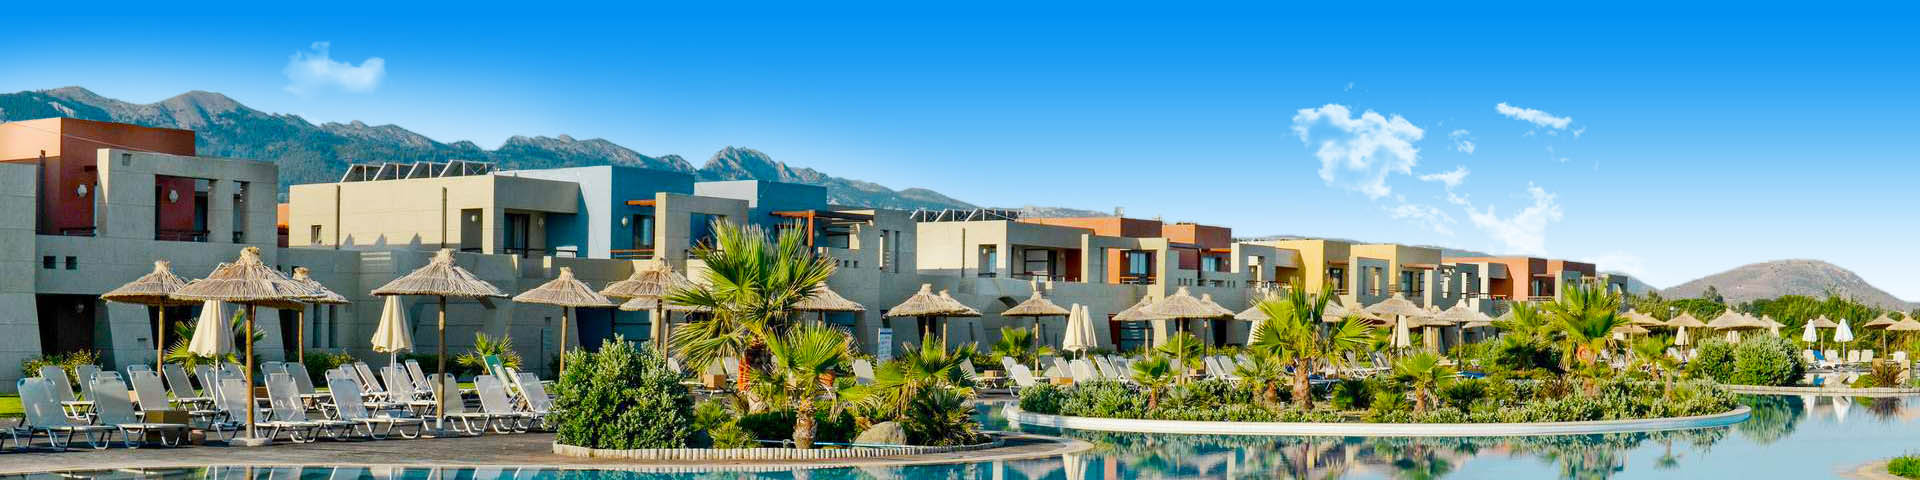 All inclusive resort met mooi zwembad in Kos, Griekenland